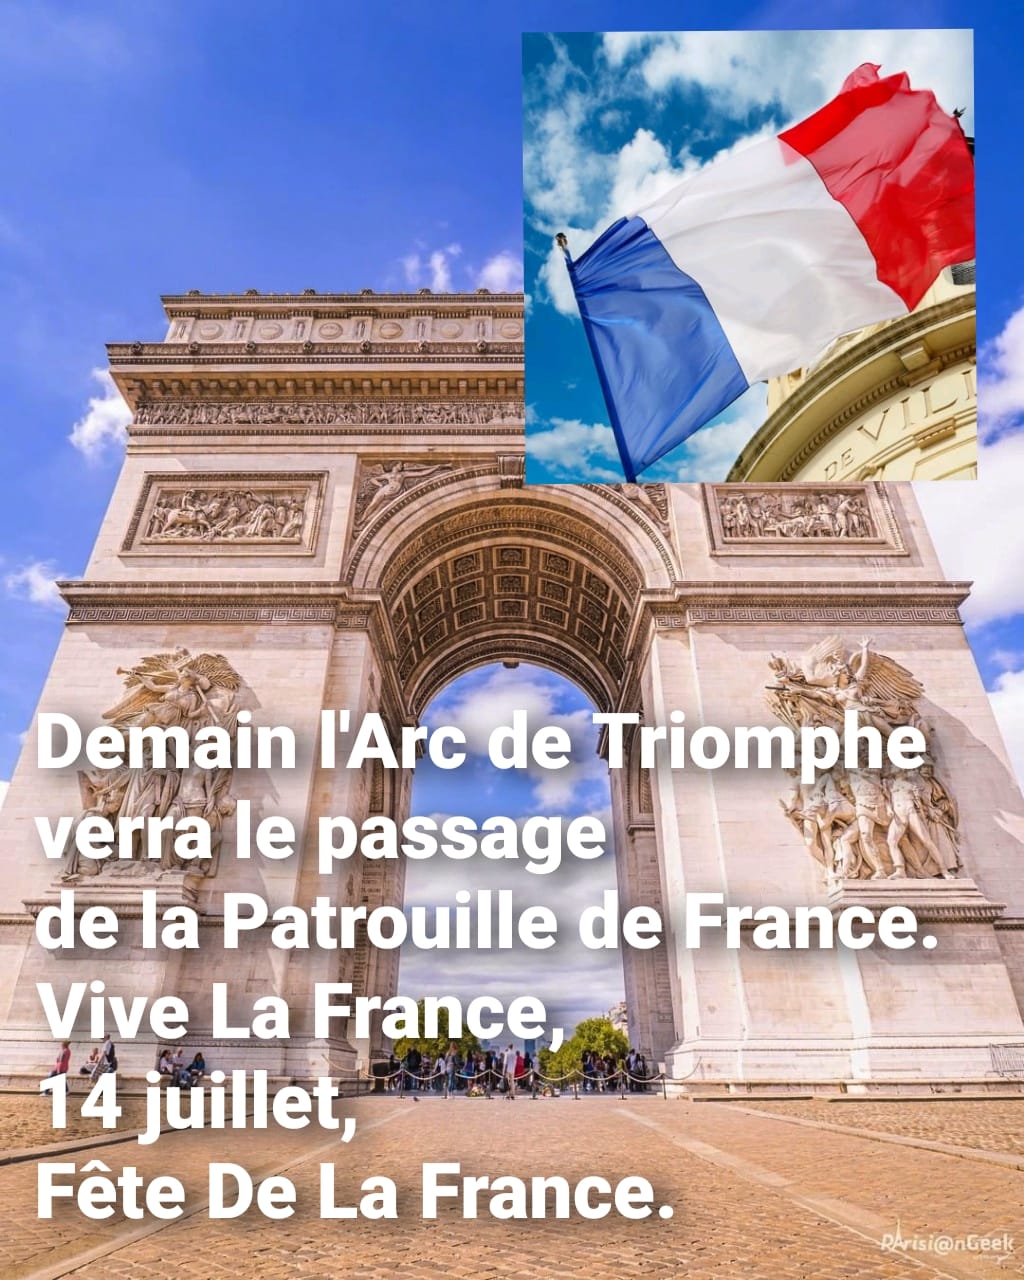 Demain l'Arc de Triomphe verra le passage de la Patrouille de France. Vive La France, 14 juillet. Fête De La France.